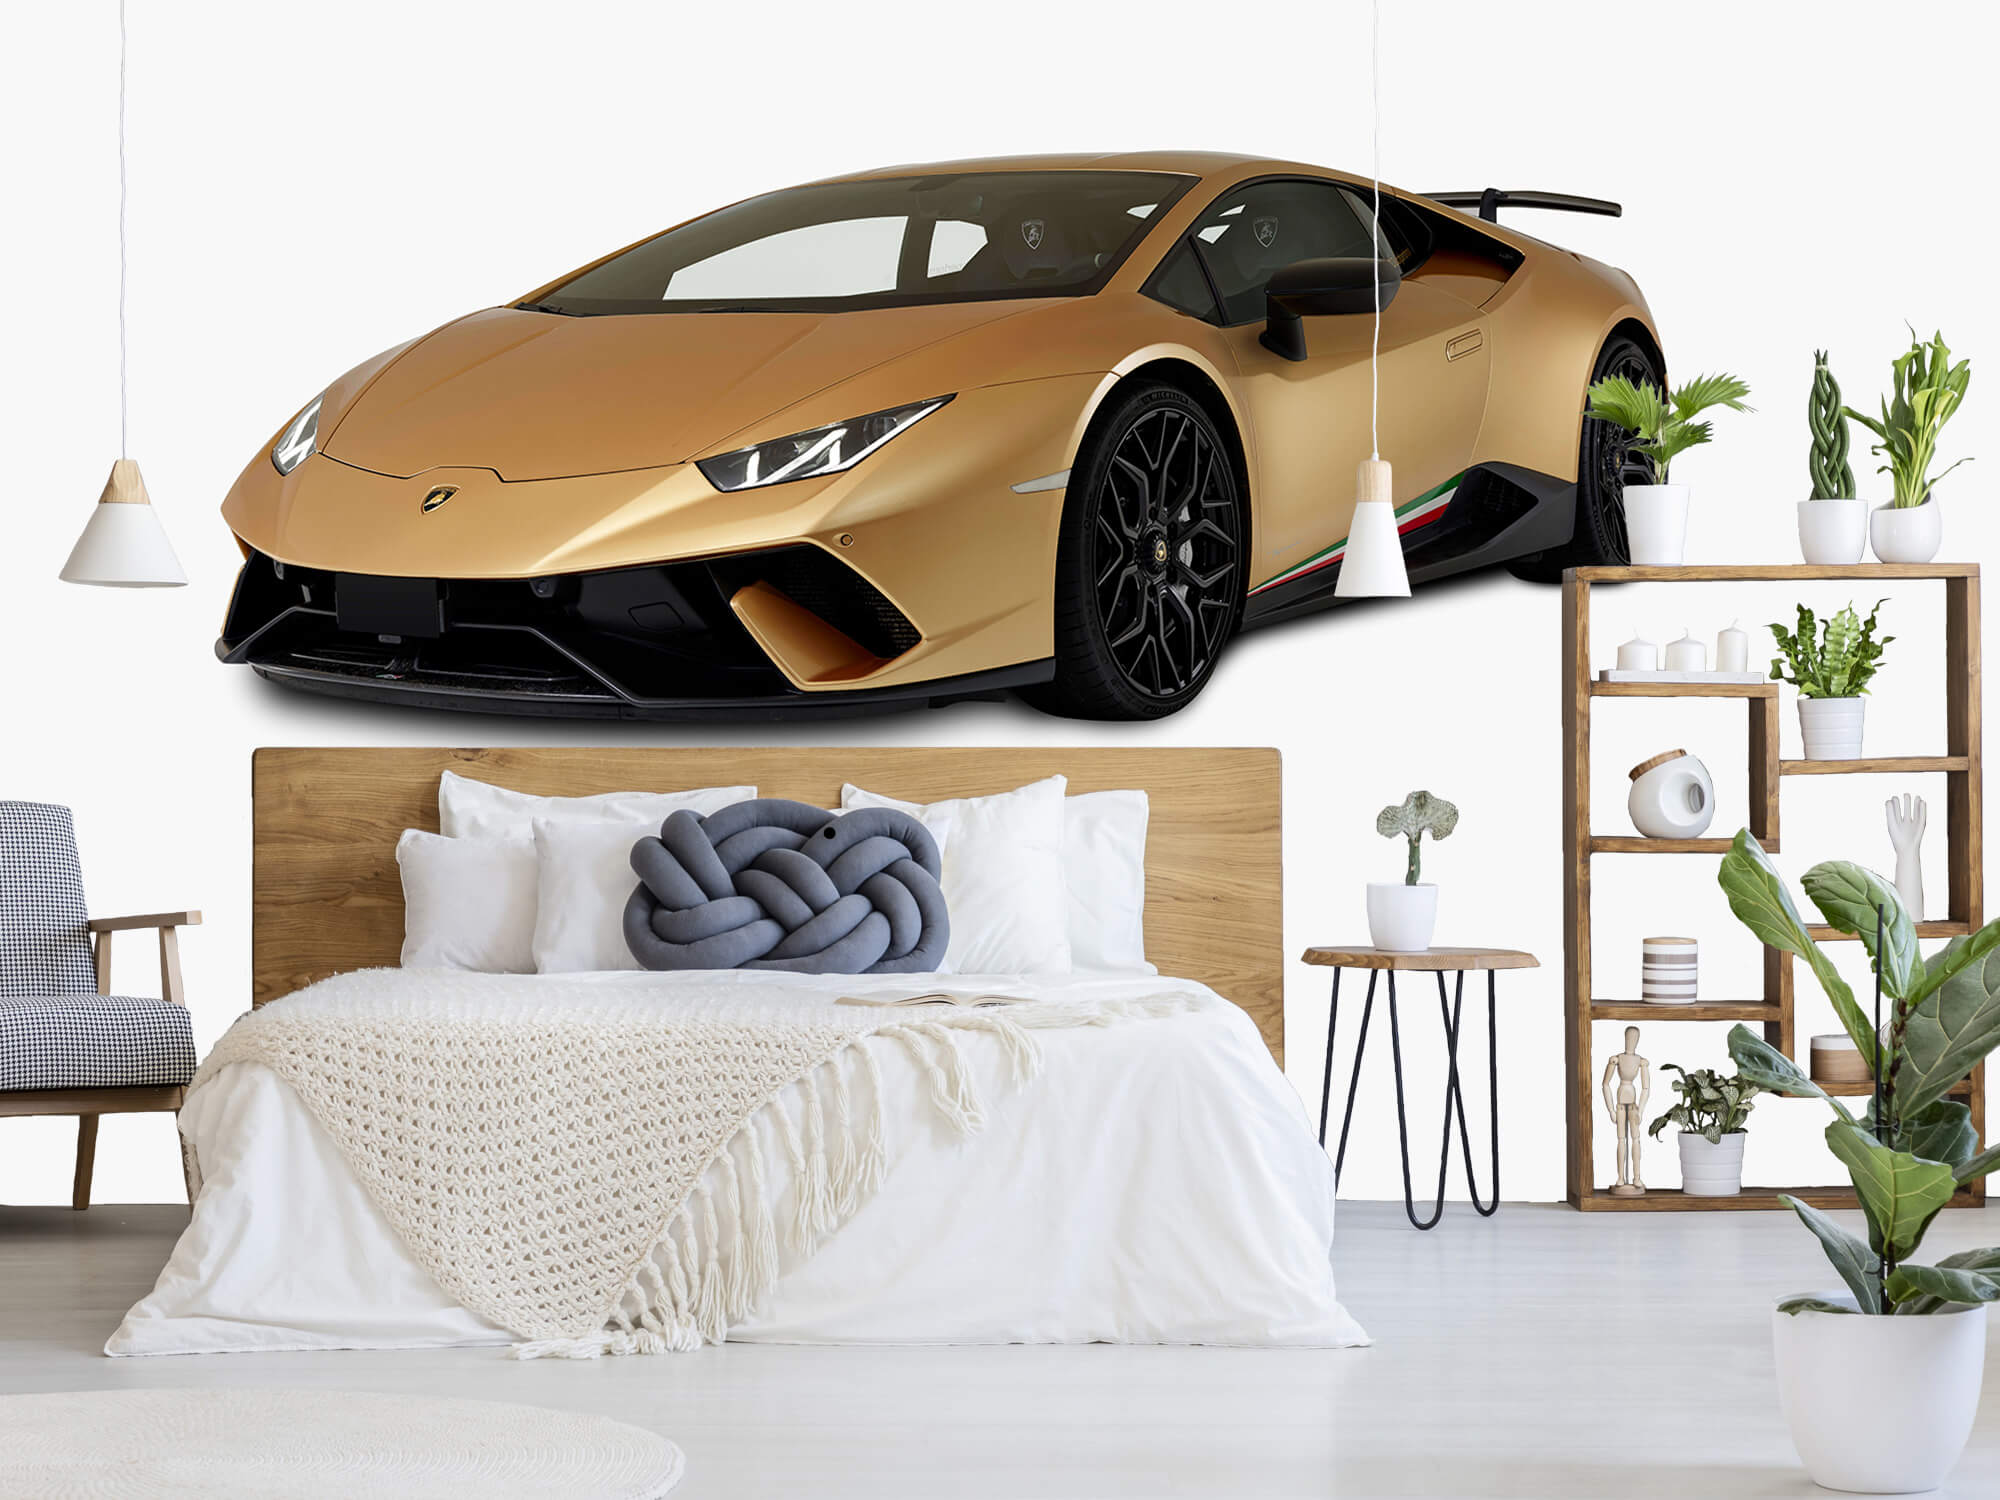 Empapelado Papel pintado con Lamborghini Huracán - delantero derecho, blanco - Habitación de niño 2